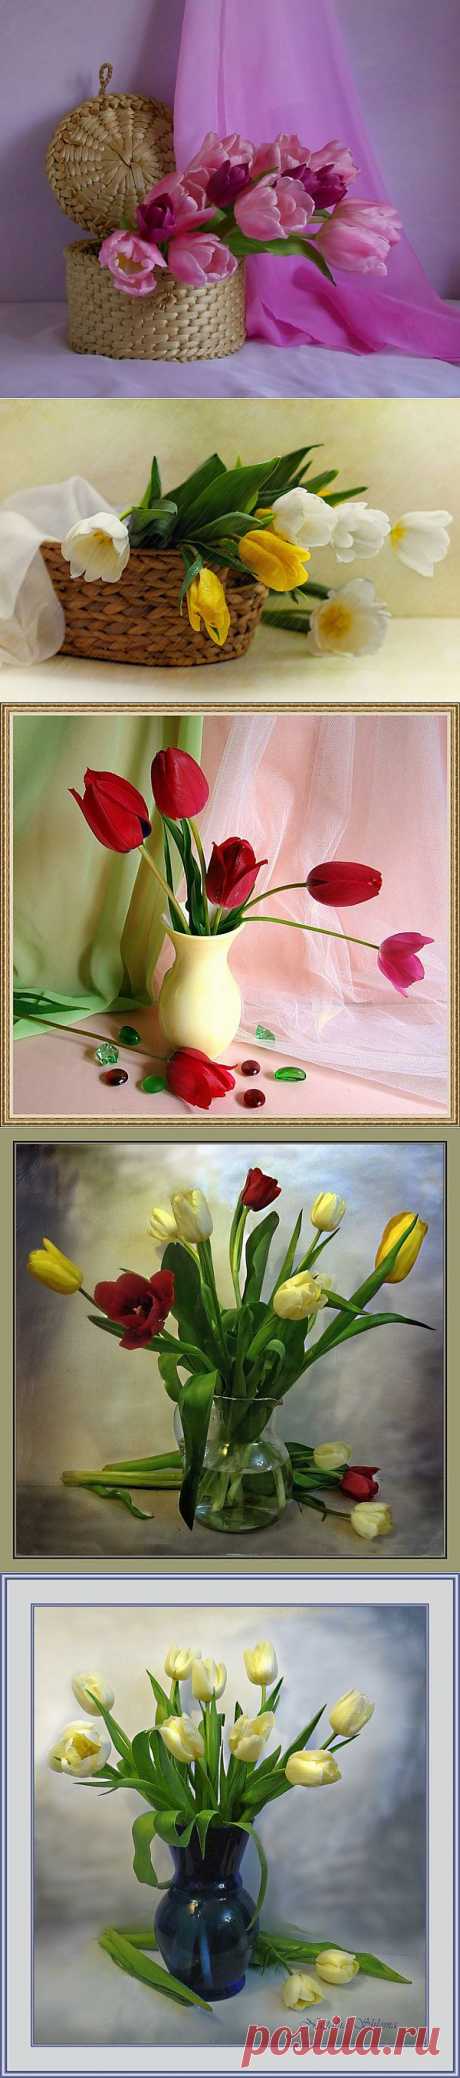 Натюрморты Тюльпаны, тюльпаны. 
Голландское солнце цветет на столе. 
Душа пробудилась, согрета. 
Тюльпаны… Тюльпаны в моем хрустале. 
Мелодия желтого света.